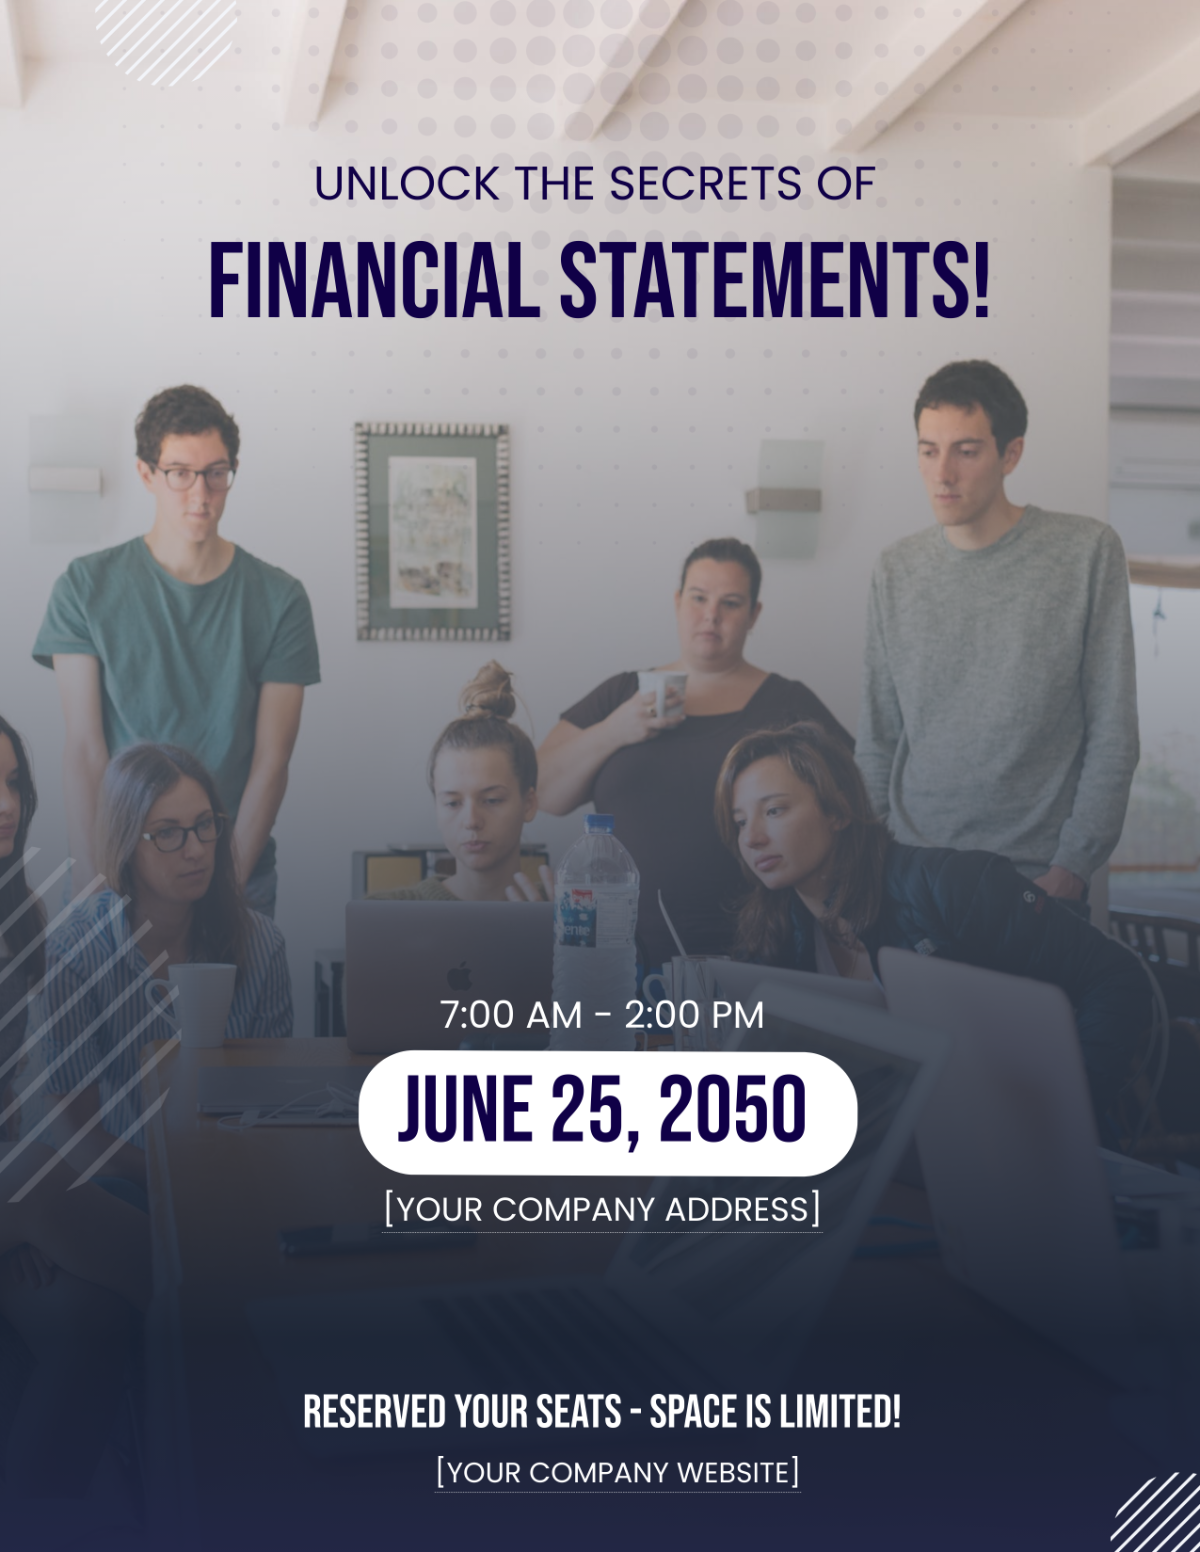 Financial Statement Analysis Workshop Flyer